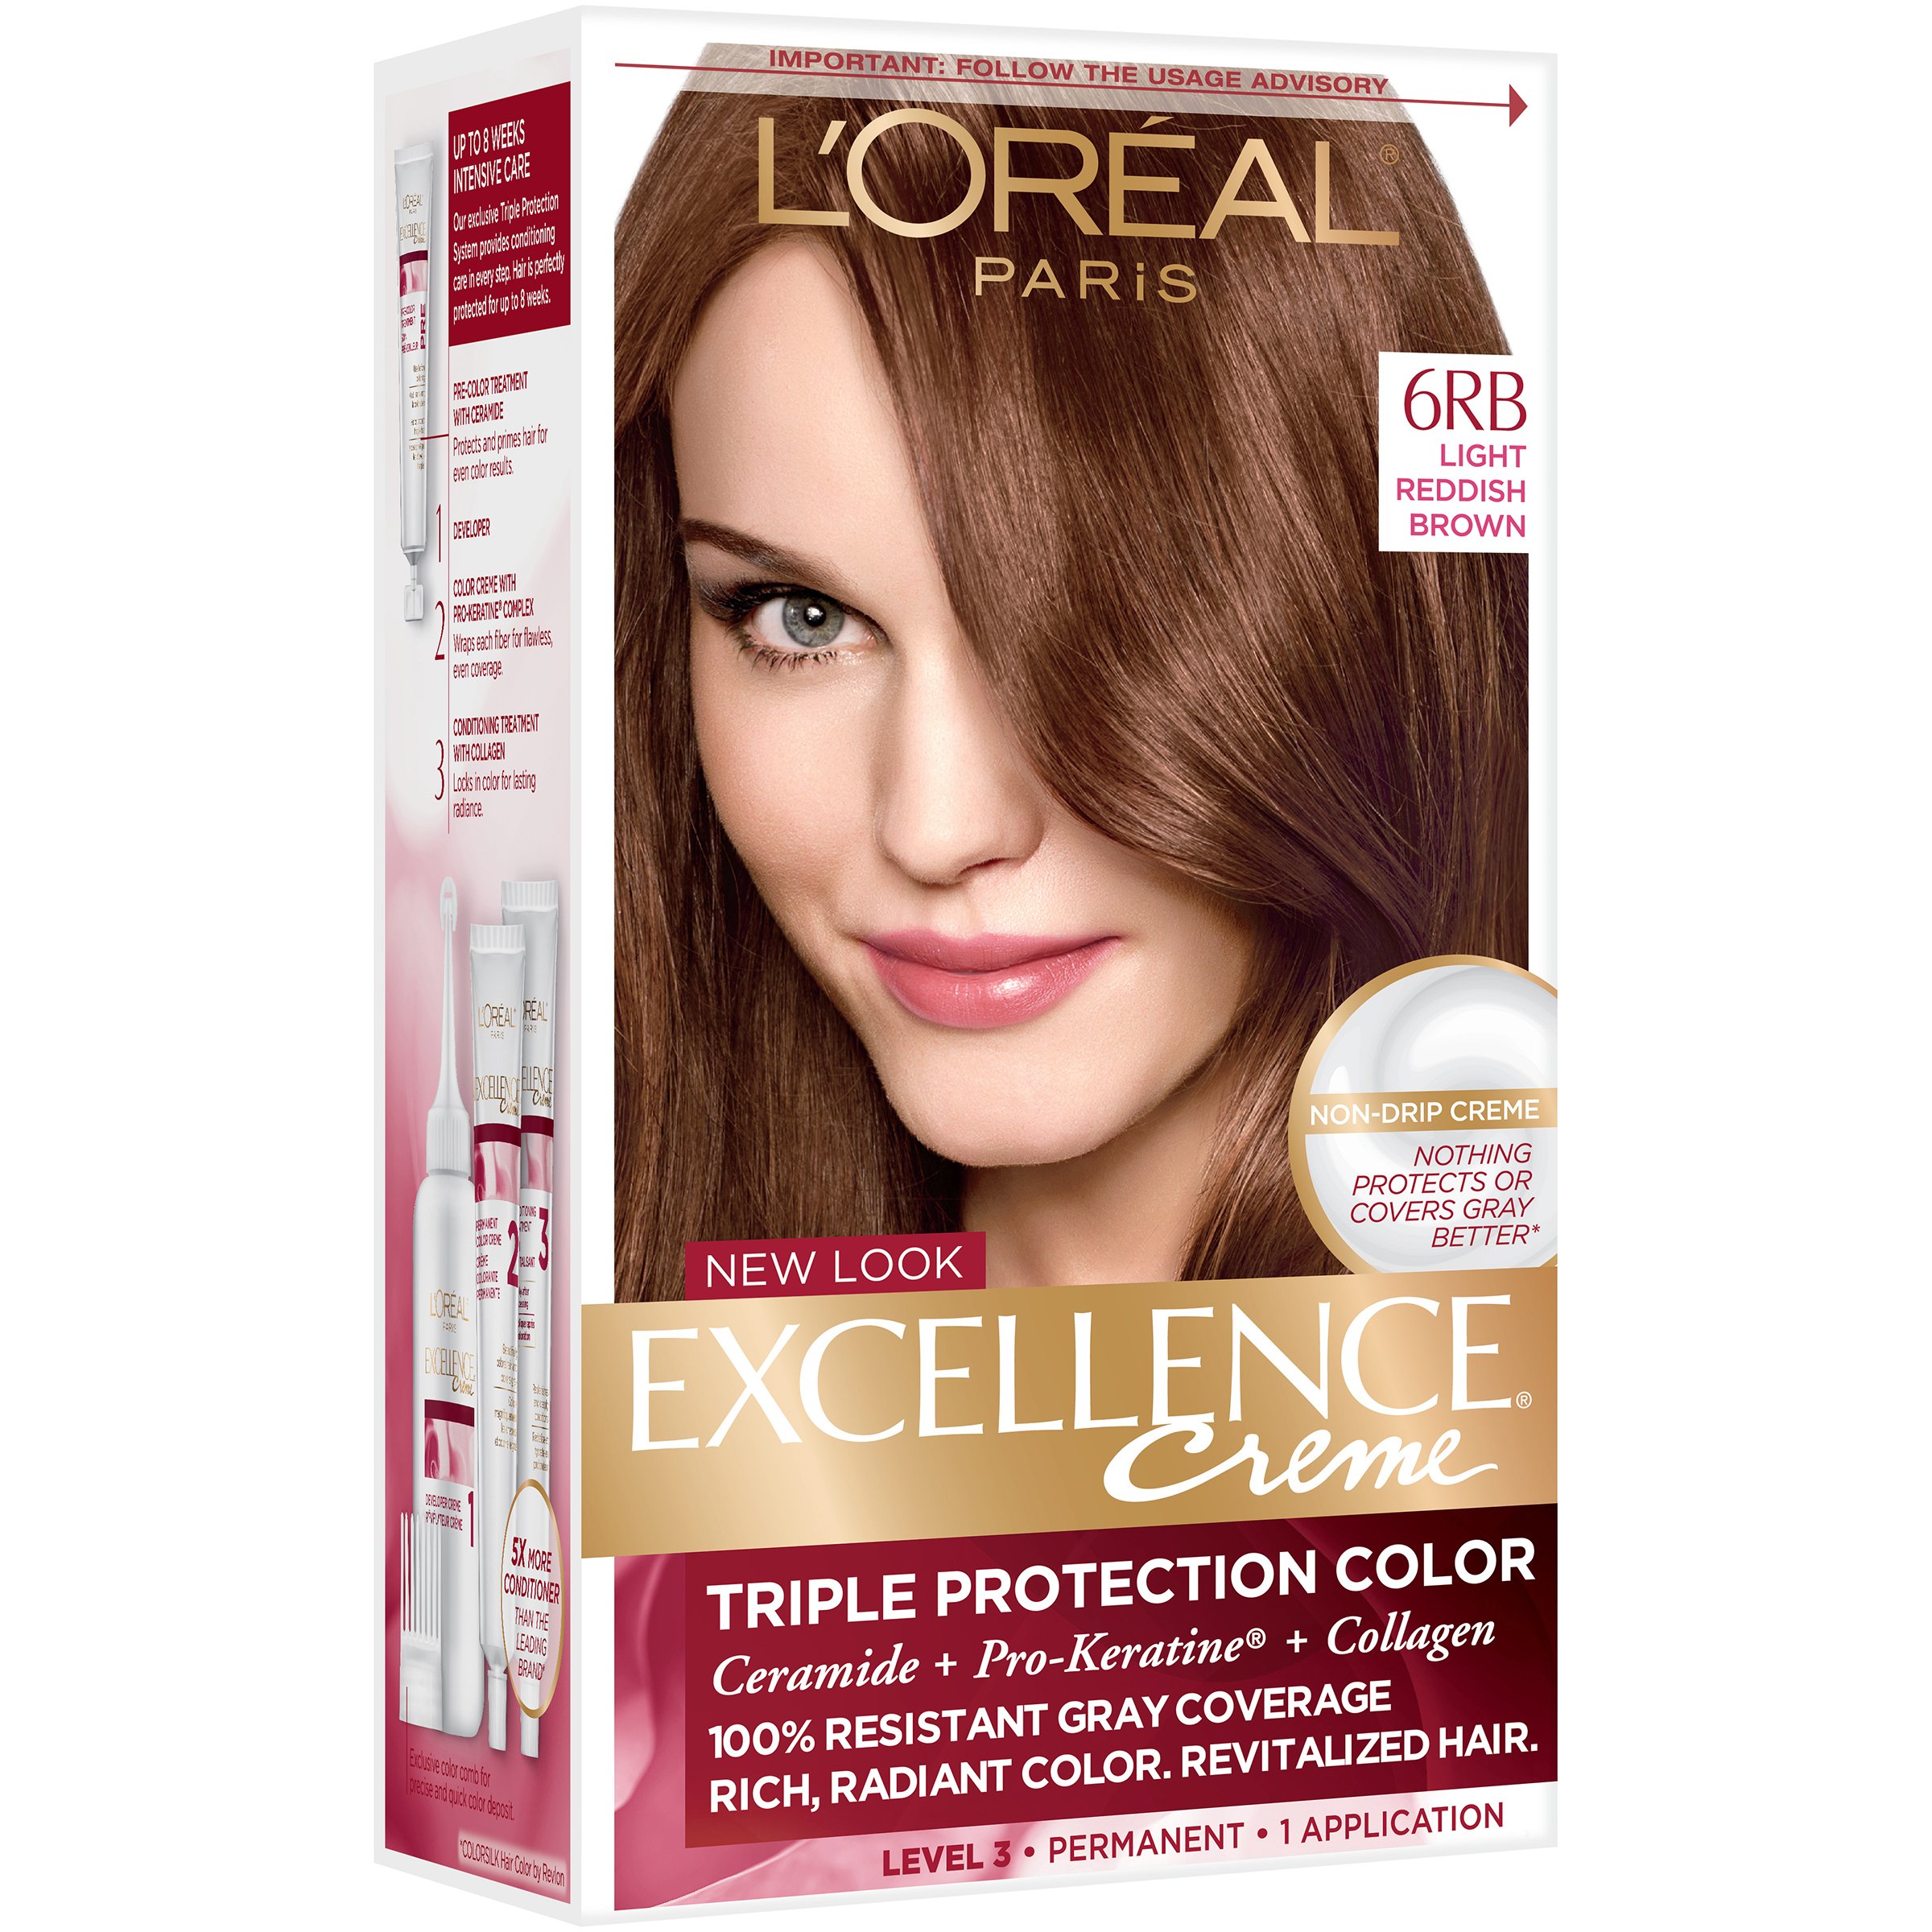 Paris Créme Permanent Hair 6RB Light Reddish Brown - Shop Hair Color at